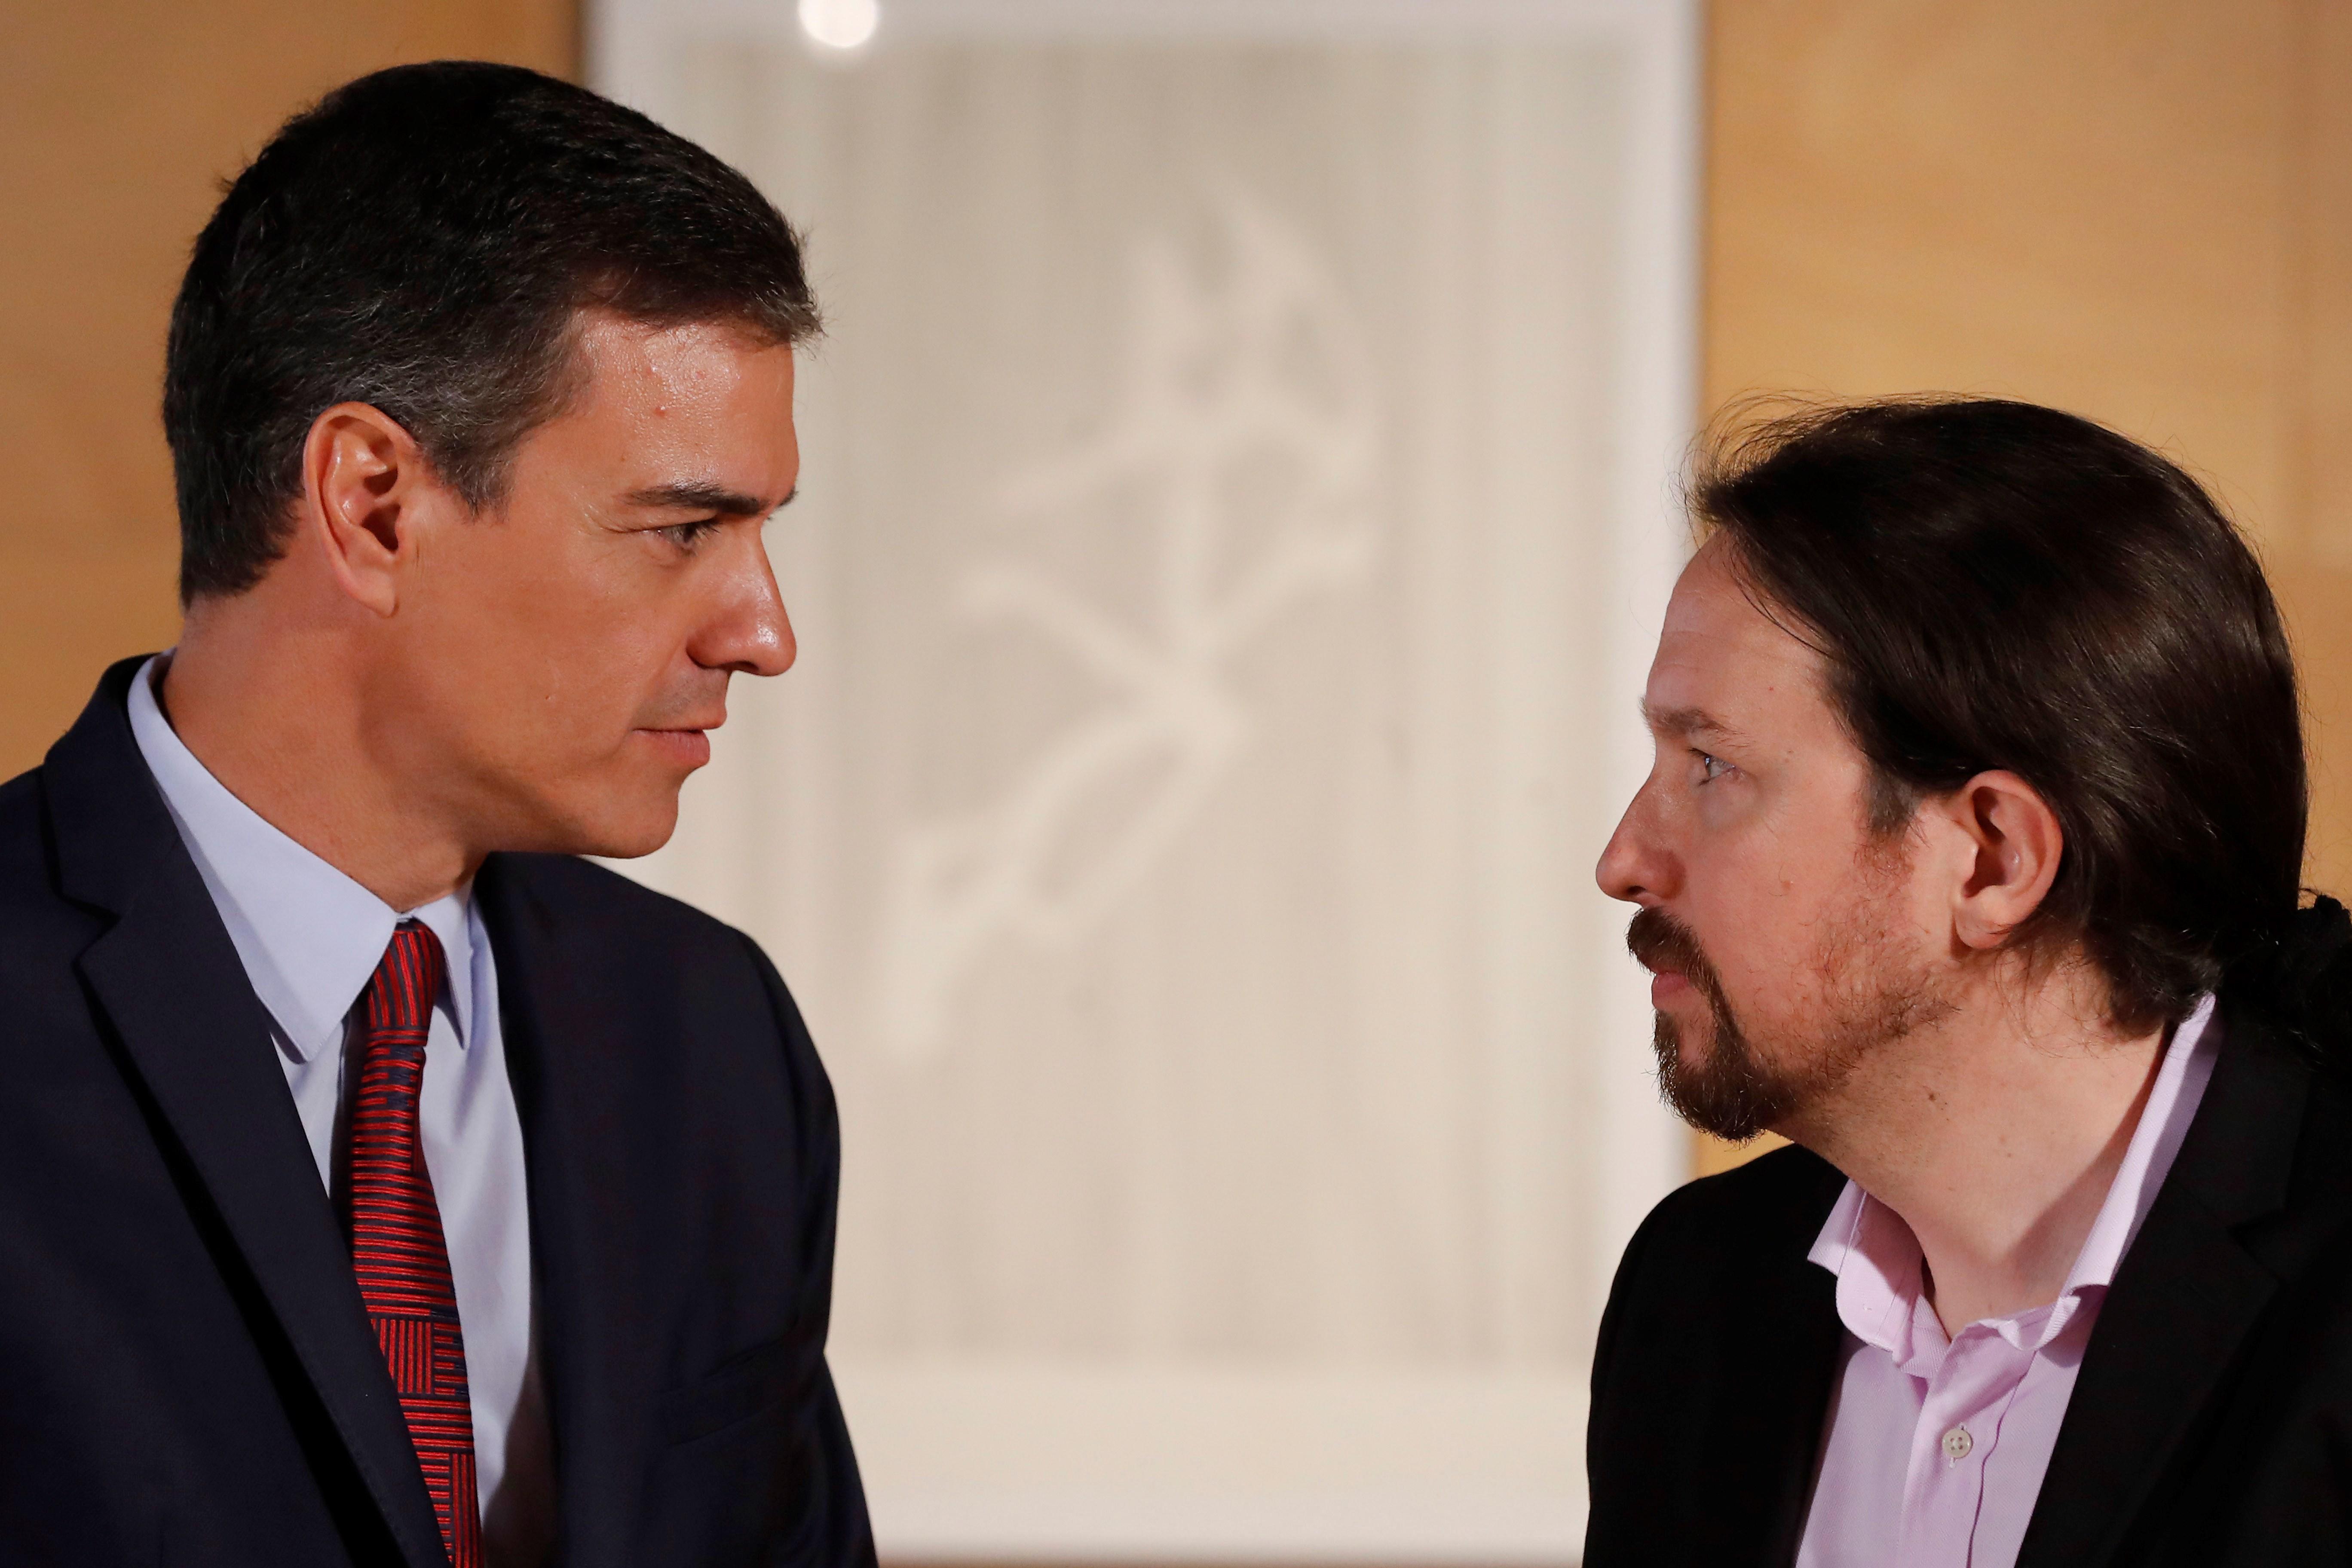 Pedro Sánchez ofreció a Podemos “altas responsabilidades” en instituciones del Estado